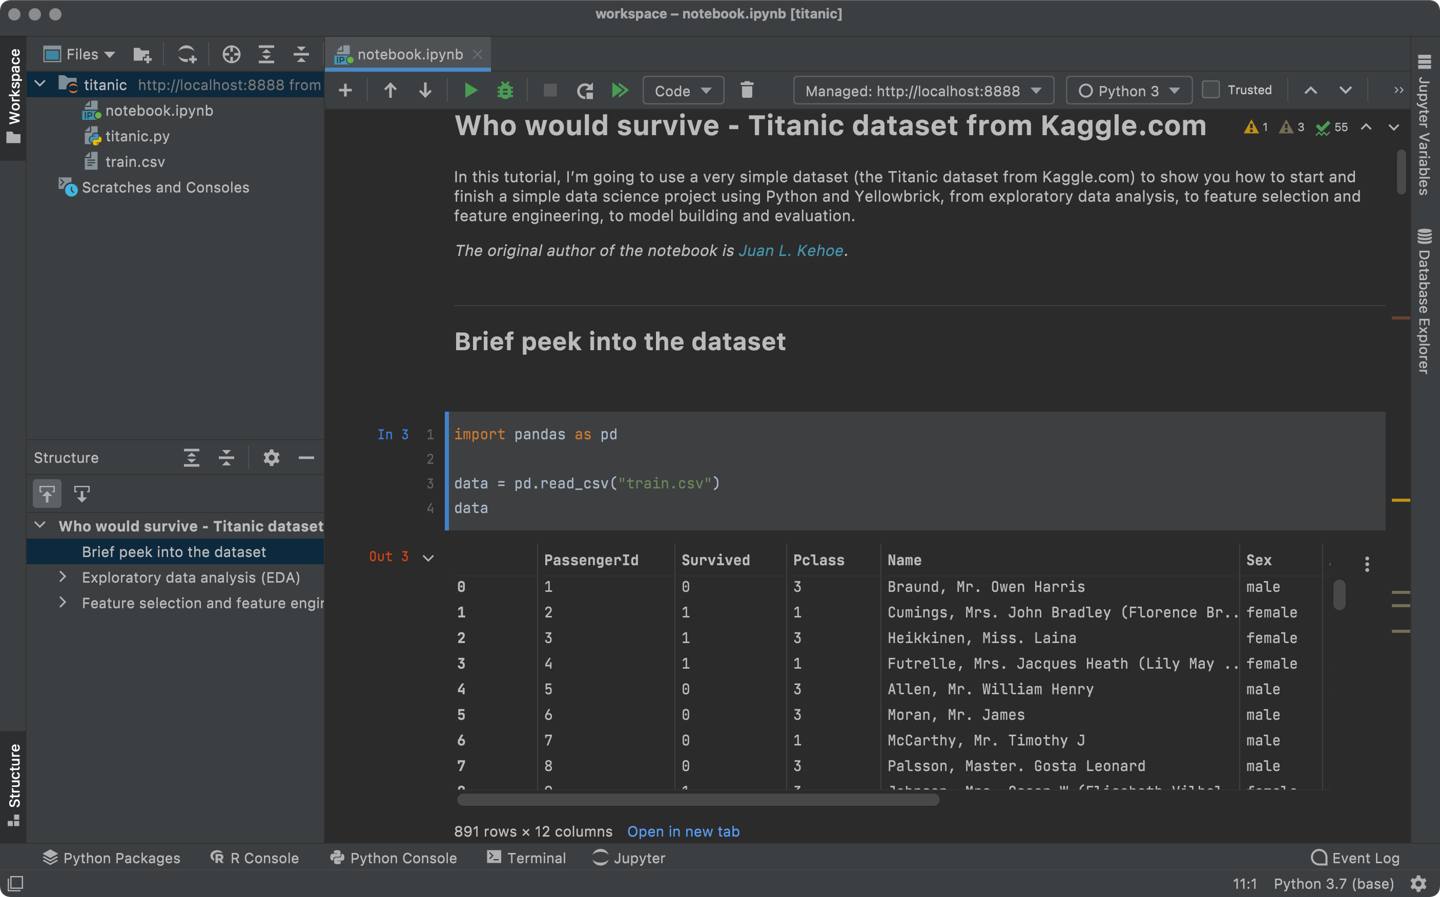 JetBrains 全新数据科学 IDE DataSpell 正式发布：支持 PyCharm 的智能 Python 和 R 编码辅助